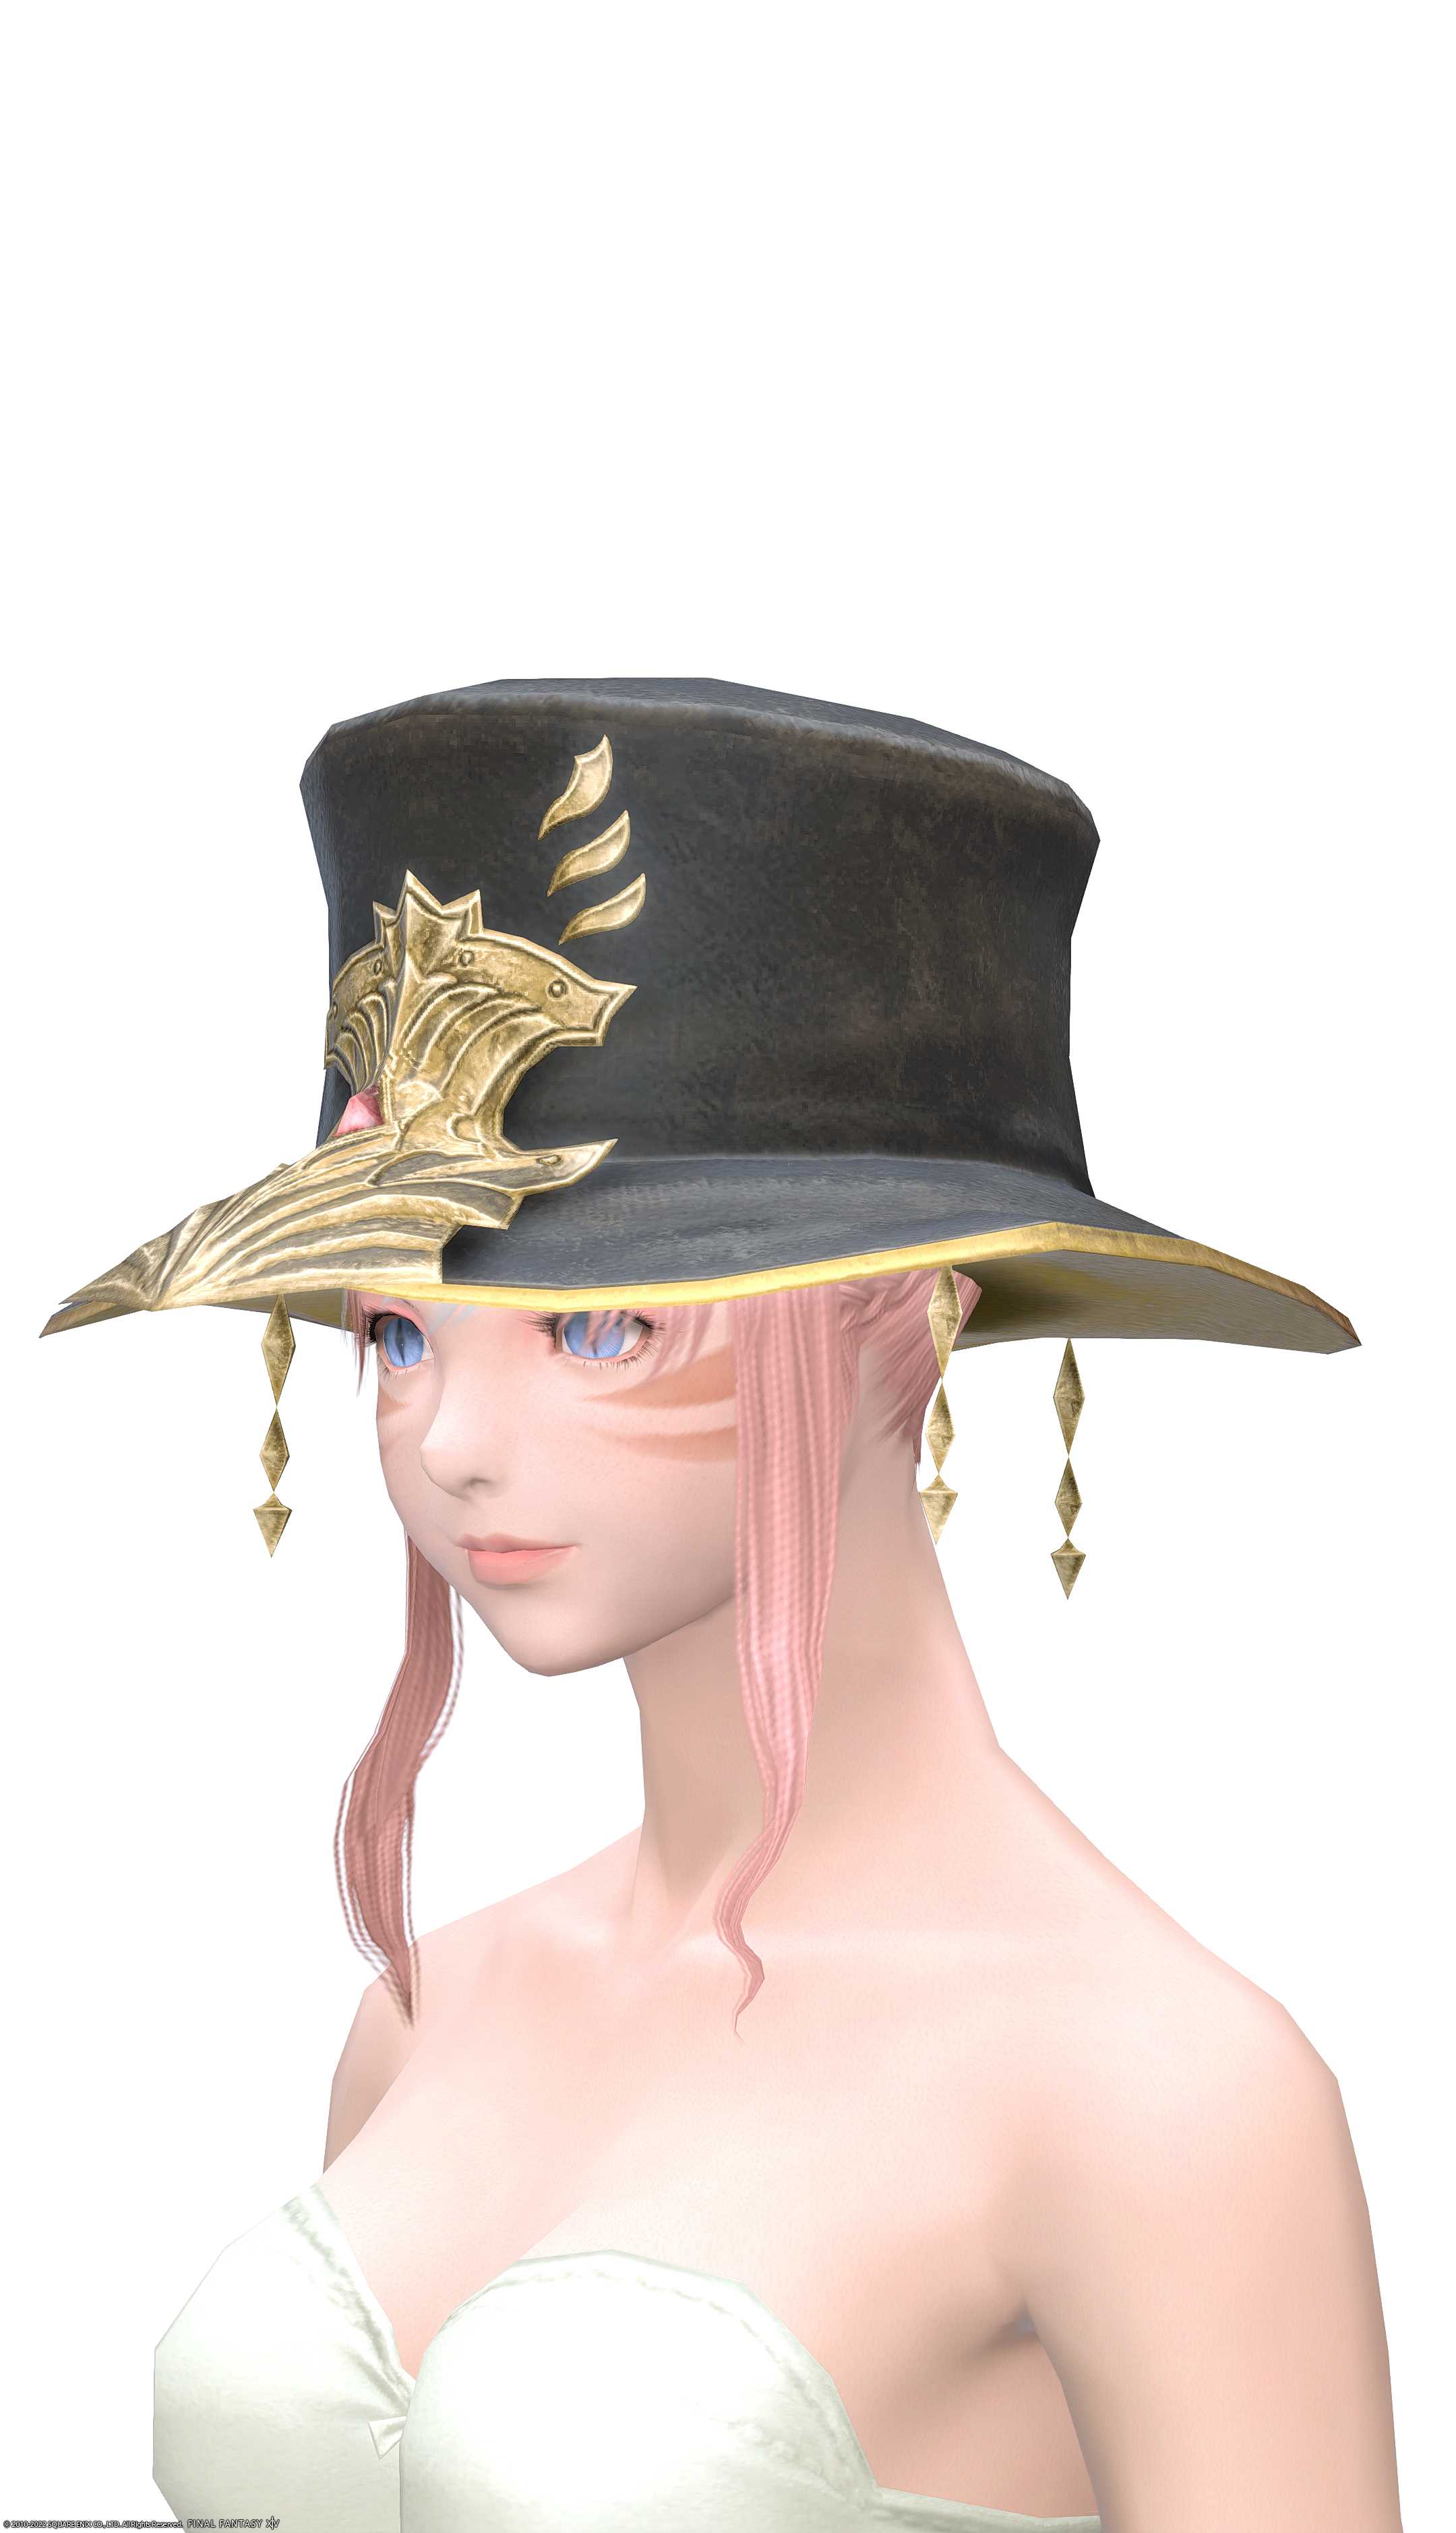 エクサーク・キャスターハット | FF14ミラプリ - Exarchic Hat of Casting - 帽子/ハット